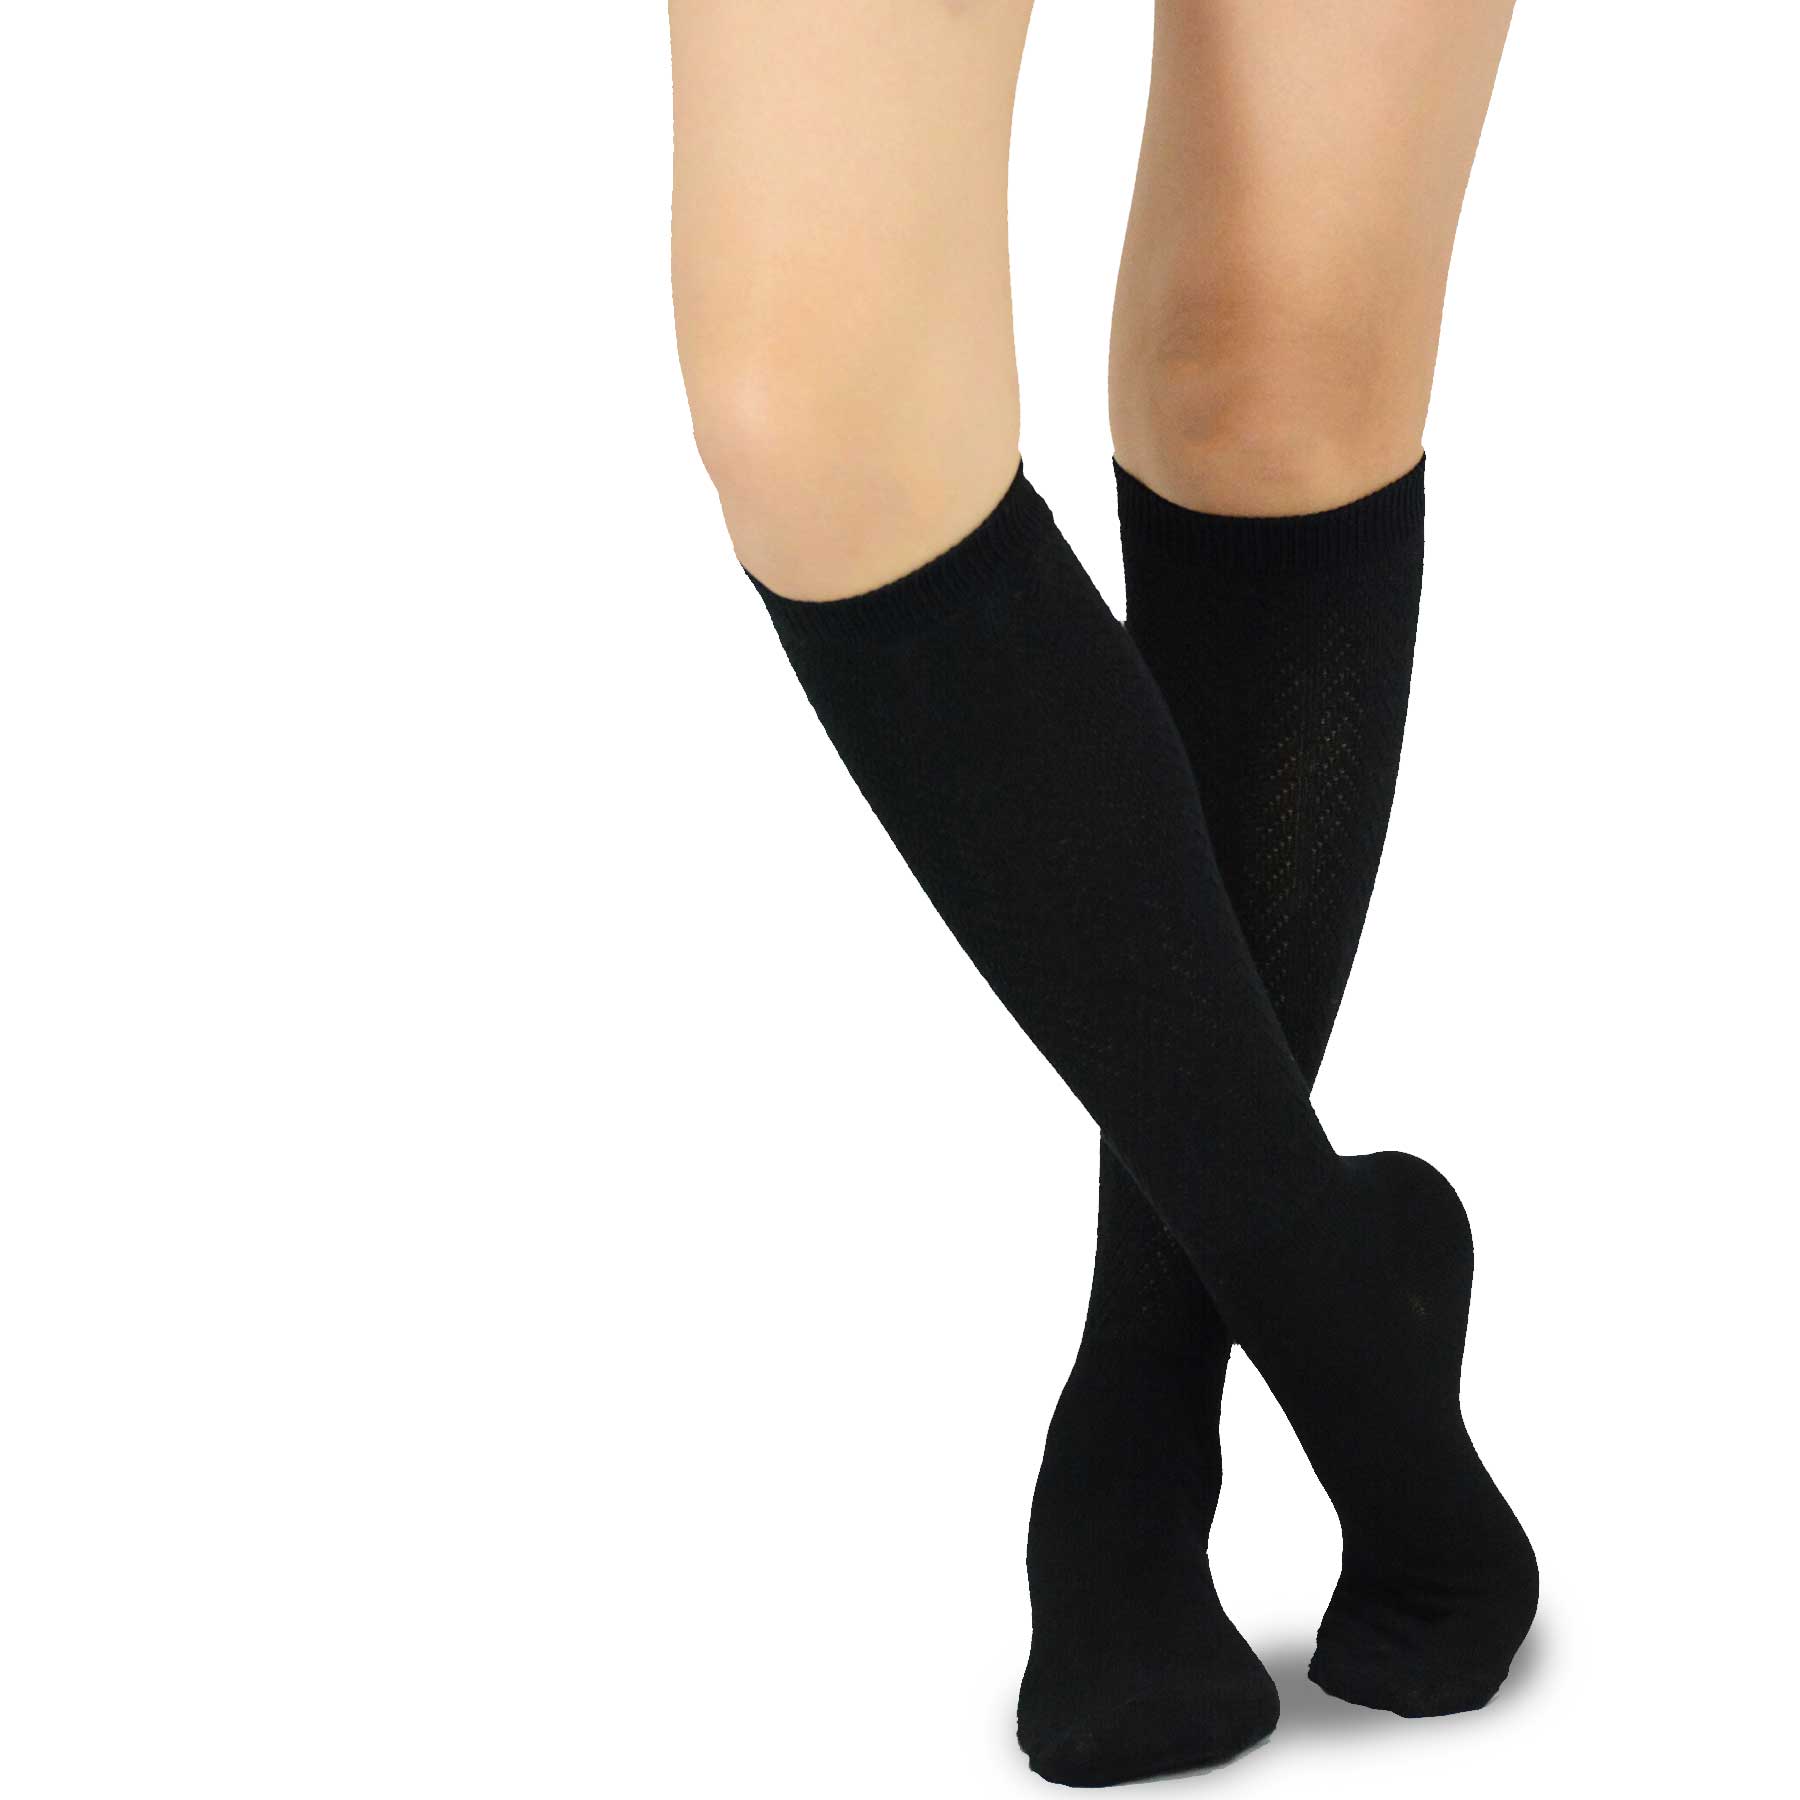 Black Rib Pointelle Knee High Women's Socks